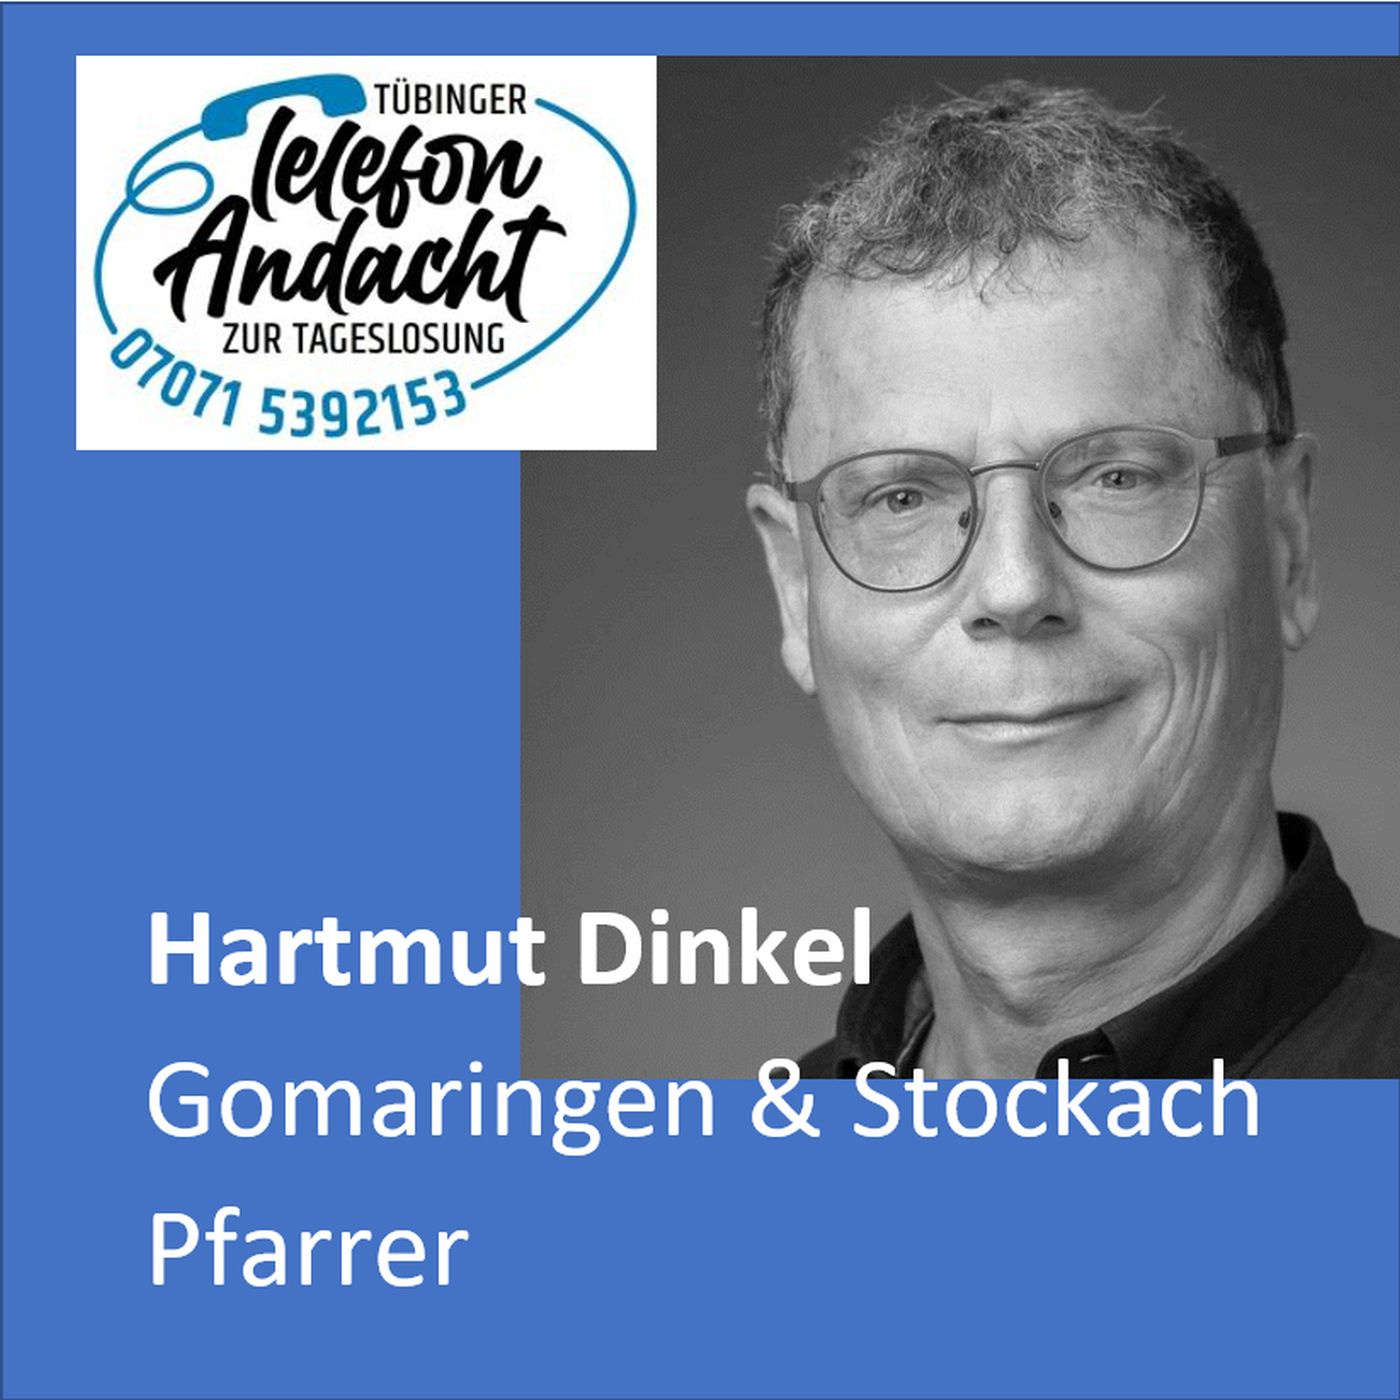 24 05 16 Hartmut Dinkel